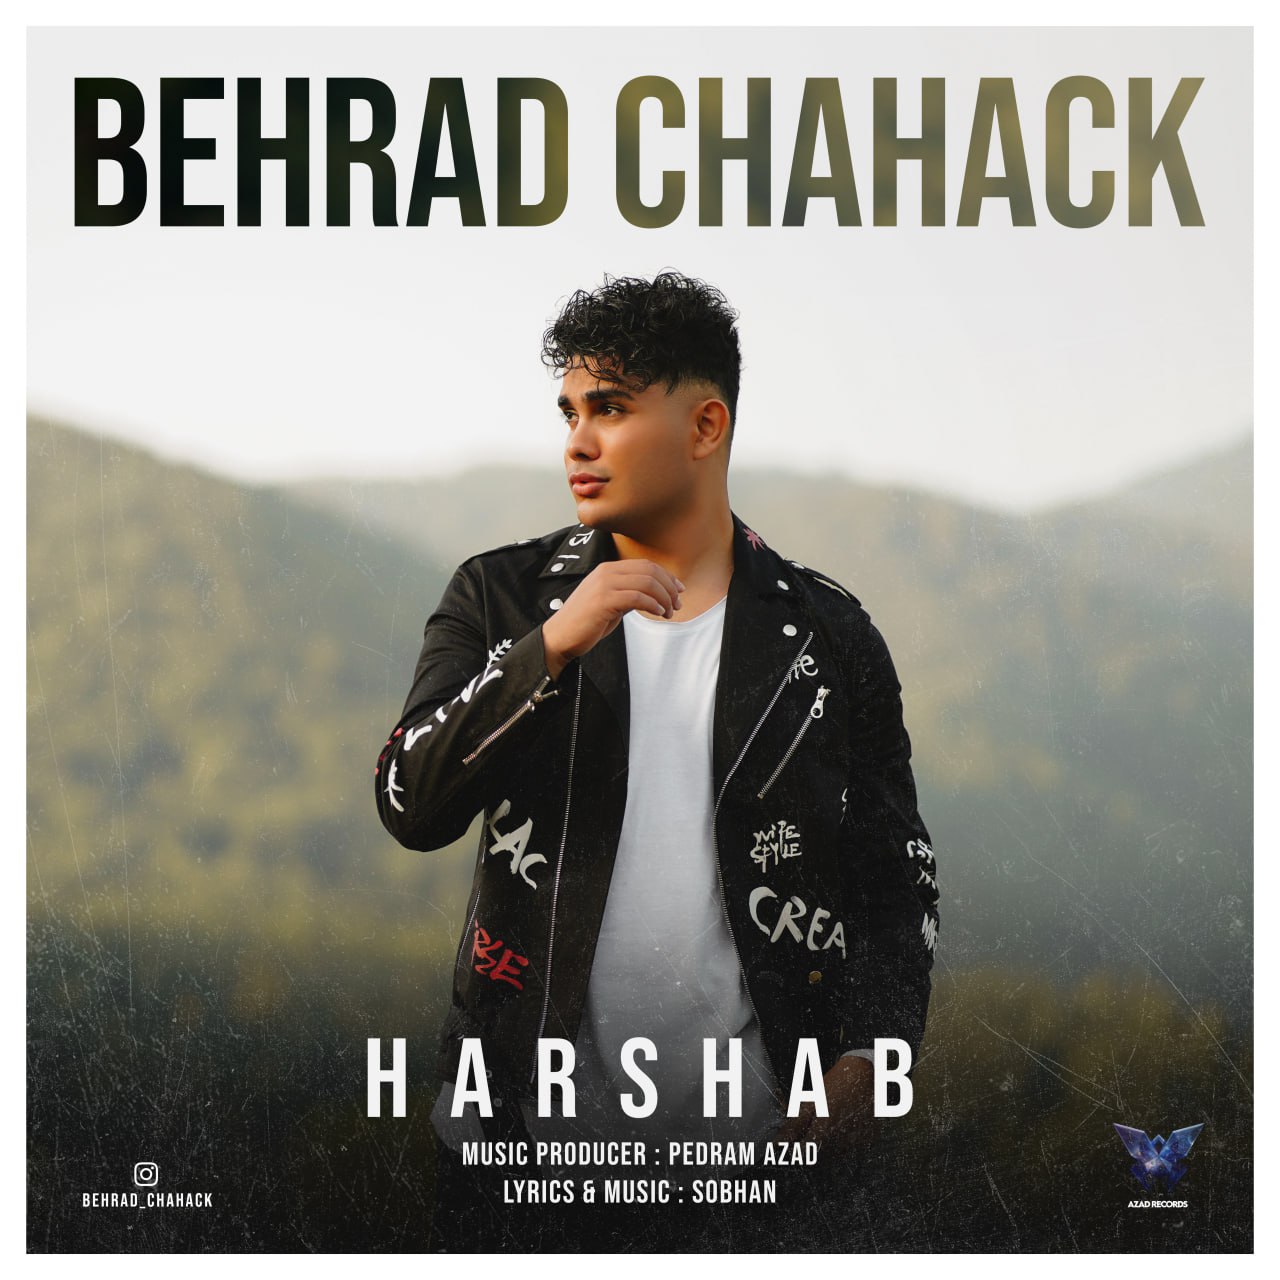 Behrad Chahak – Har Shab